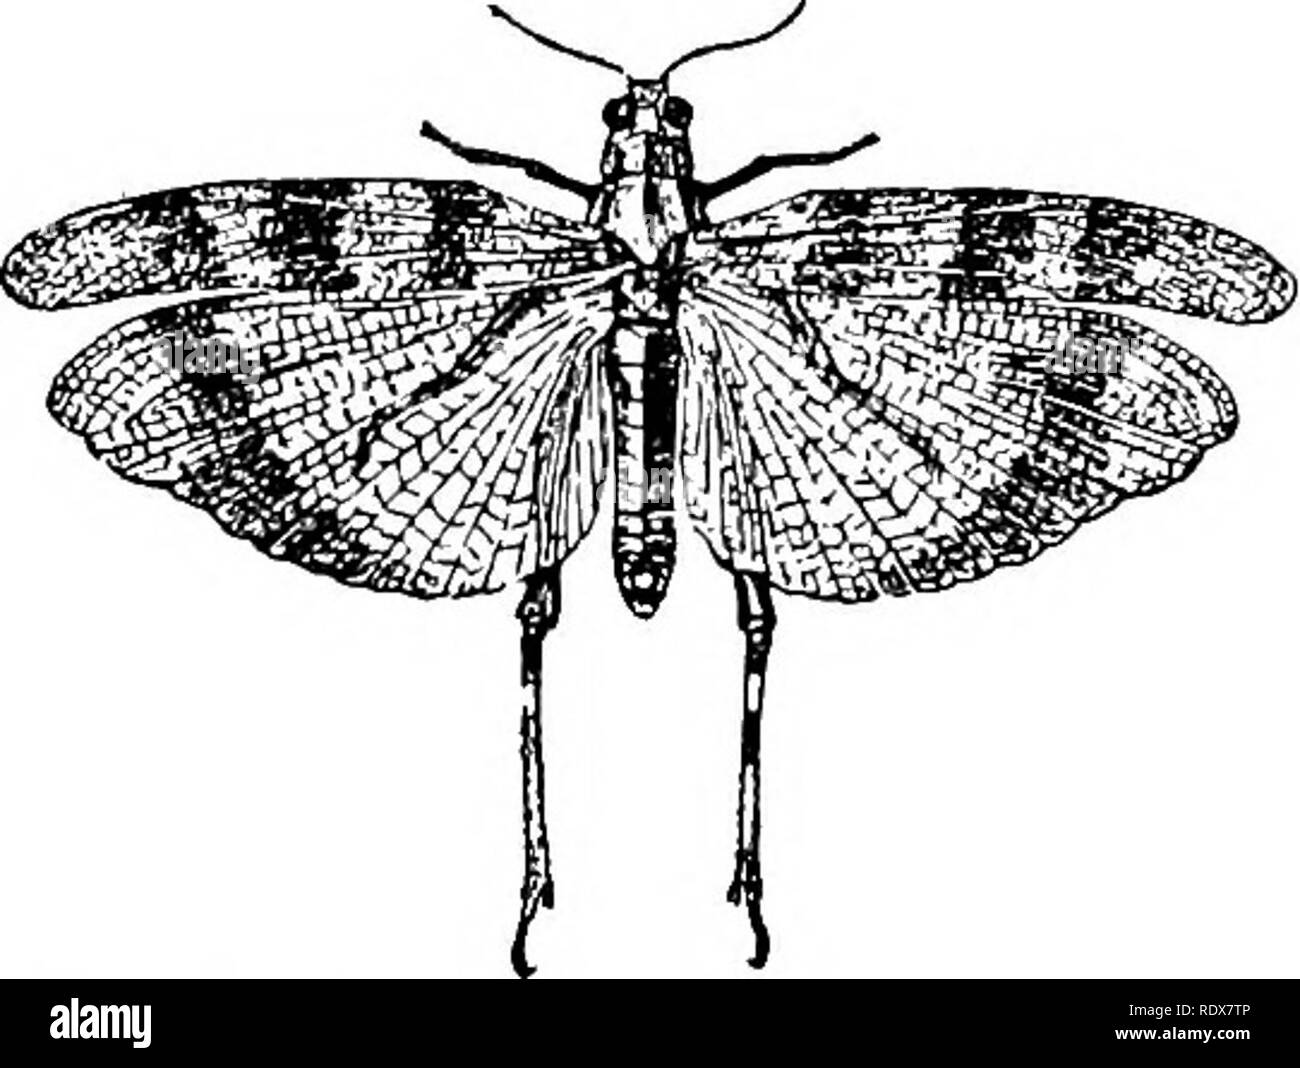 . Natural History. Zoologie. 568 INSECTA - BESTELLUNGEN ORTHOPTERA UND NEUROPTERA. Die vielen Orthopterous Insekten besitzen in dieser seltsamen Situation sind sehr auffällig, Öffnung entweder in einem großen ovalen Depression, oder in eine bloße Schlitz. Die letzte Familie der Orthoptera, der LocustidcE, die die wahre Heuschrecken und Heuschrecken umfasst, kann auf einmal durch die kurzen Antennen unterschieden werden. Der ovipositor ist unauffällig, und die Hinterbeine sind lang und schmal, die Hinterbeine tibiae wird in der Regel mit einer doppelten Buchrücken oben eingerichtet. Unsere gemeinsame Heuschrecken Sprung anstatt fliegen, aber die Heuschrecken, von denen einige Stockfoto